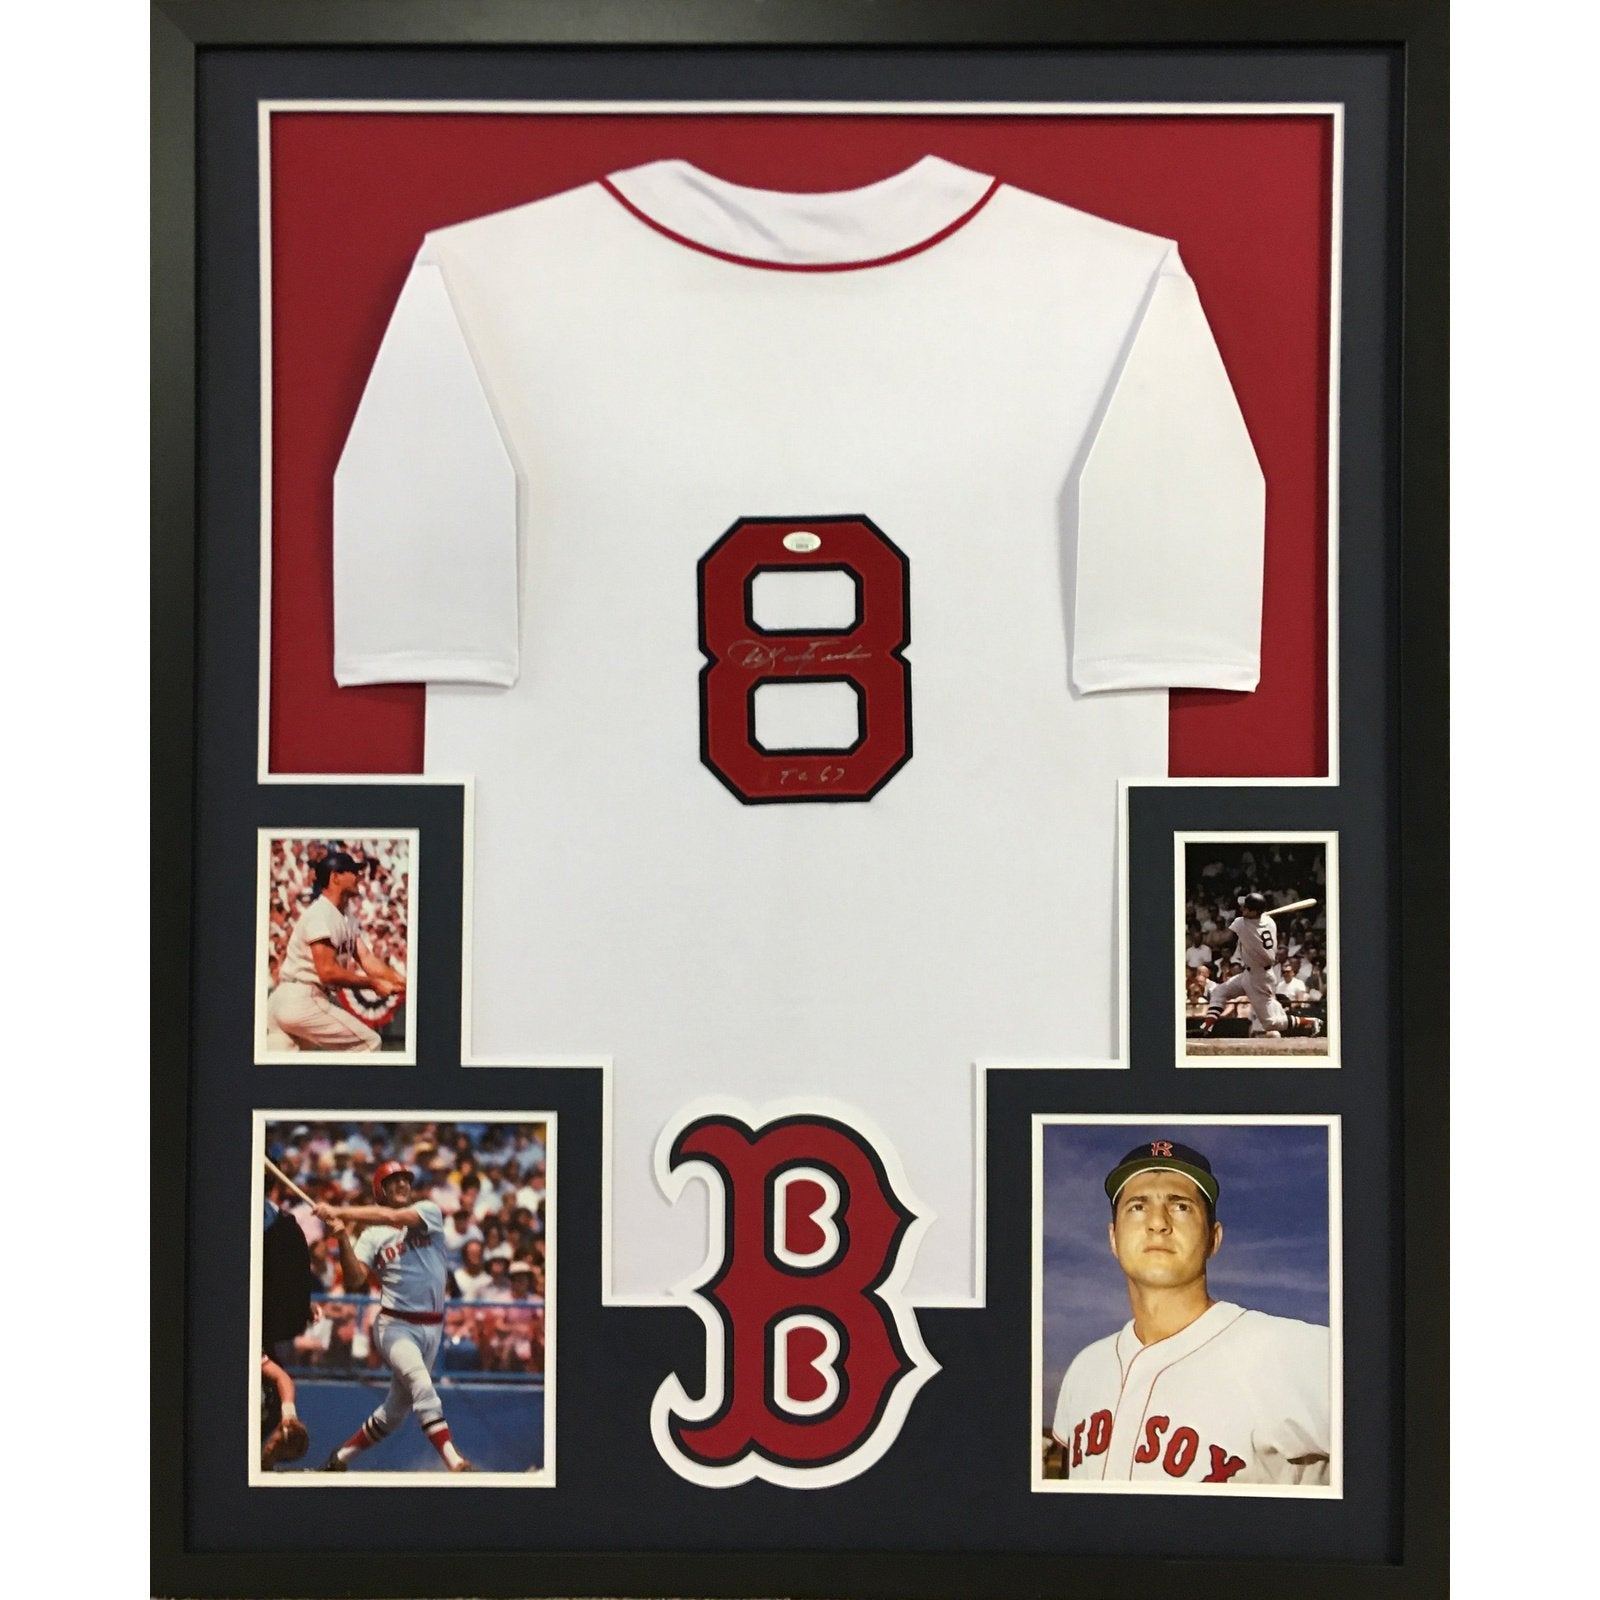 Carl Yastrzemski Signed Boston Red Sox Jersey (JSA) 1967 Triple